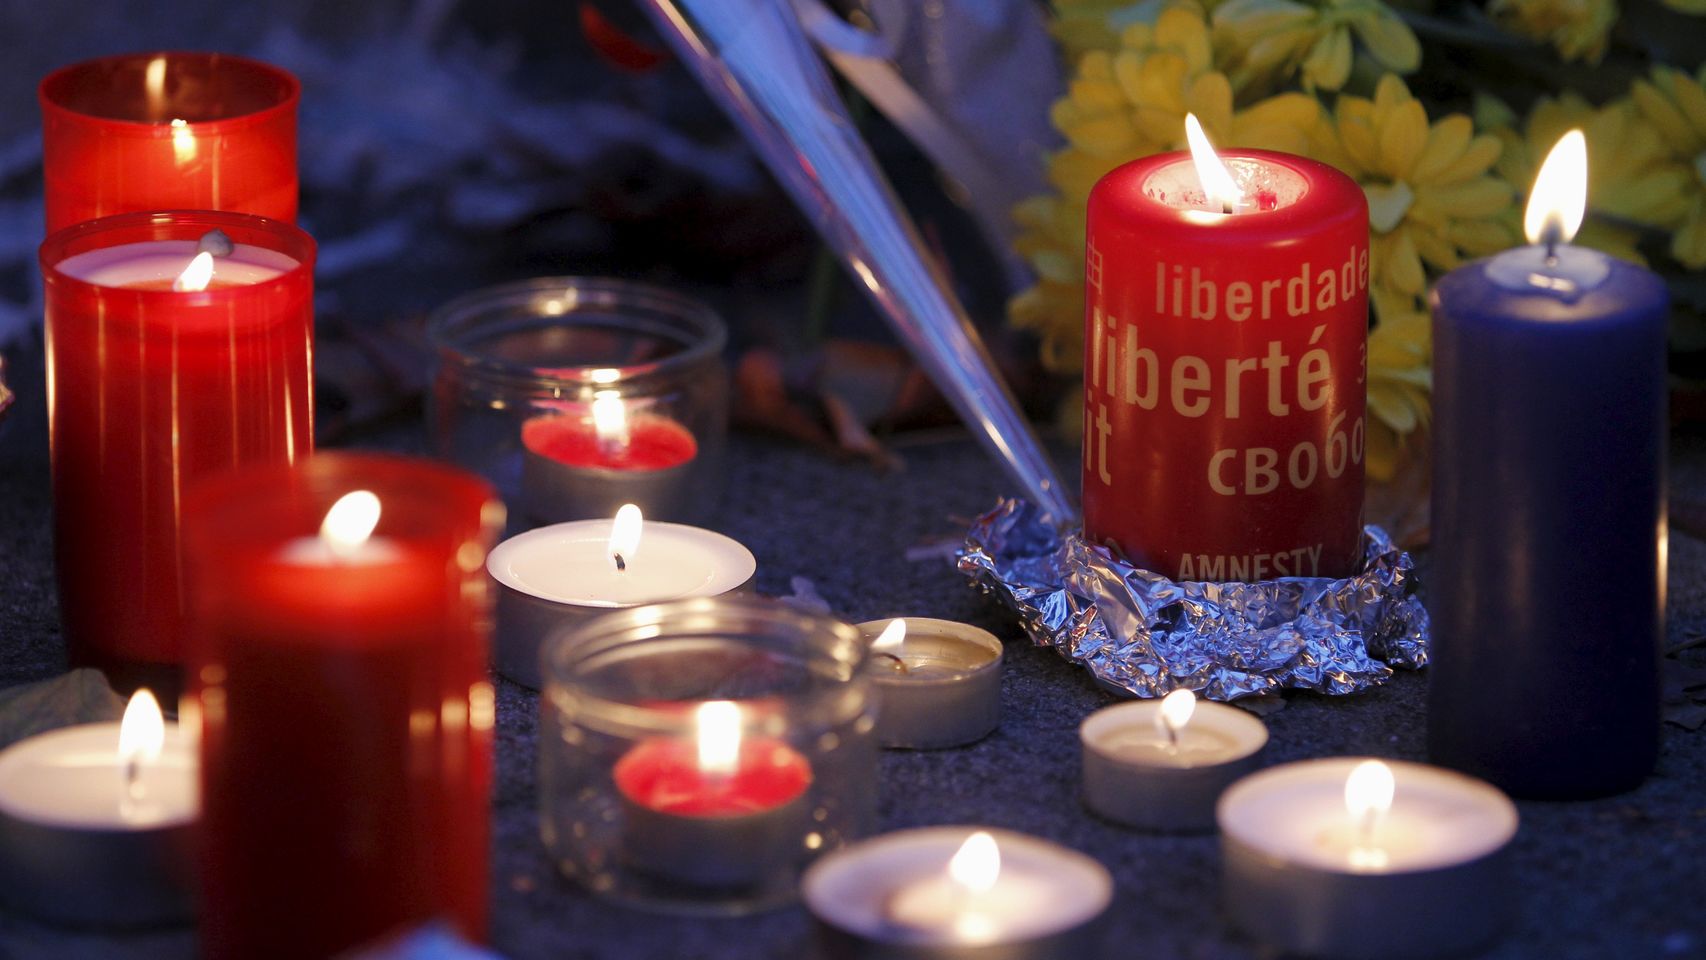  Francia, el país europeo más afectado por el terrorismo en el último año